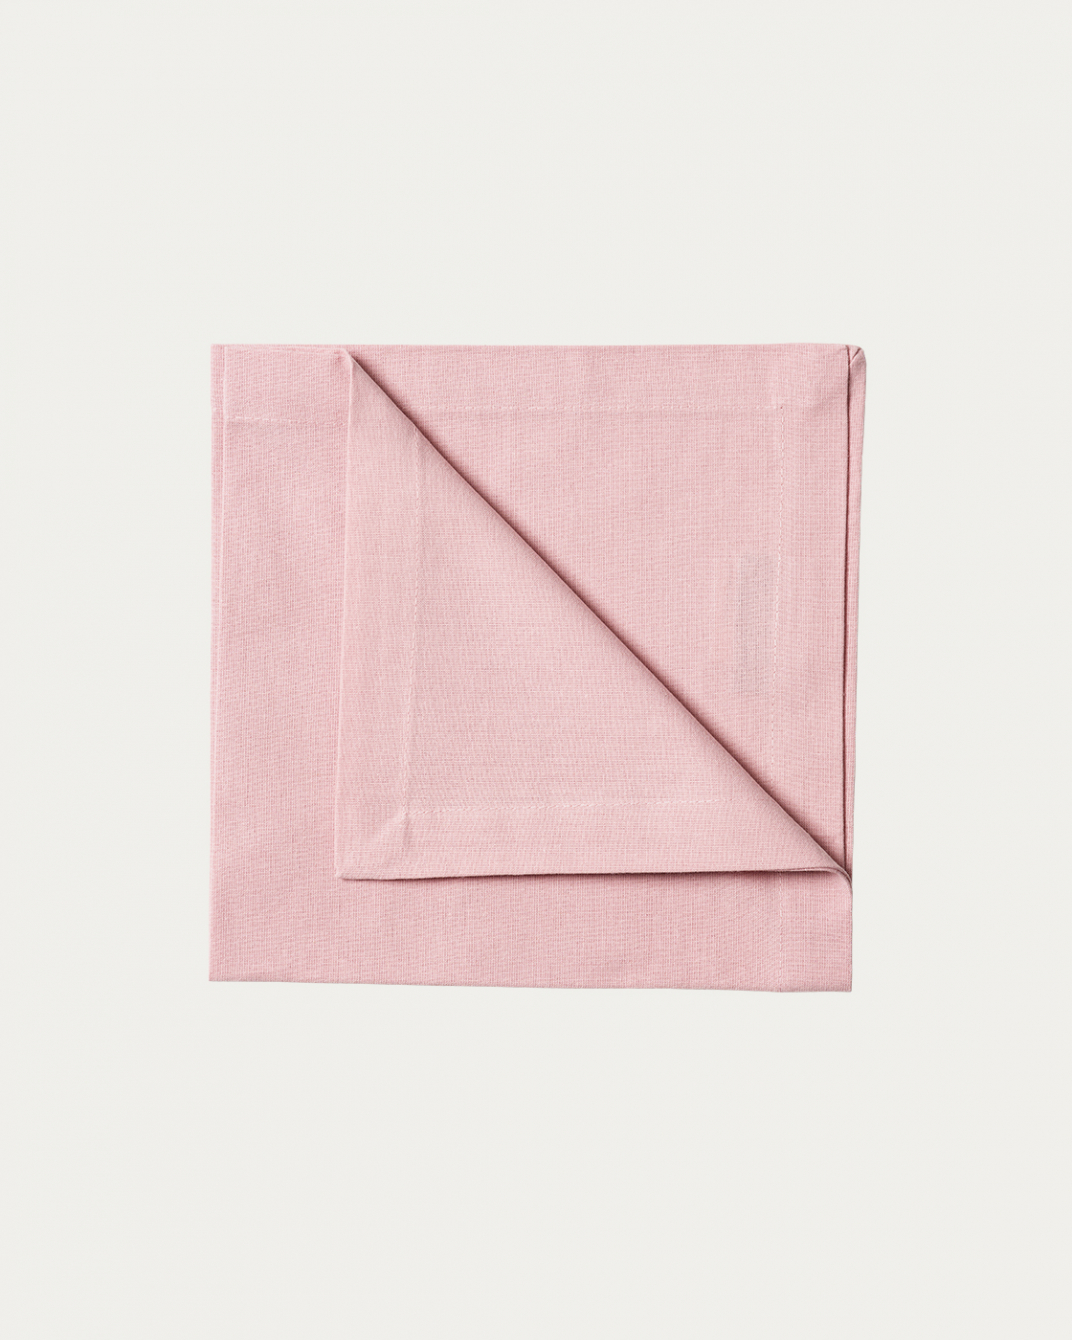 Produktbild dammig rosa ROBERT servett av mjuk bomull från LINUM DESIGN. Storlek 45x45 cm och säljs i 4 pack.